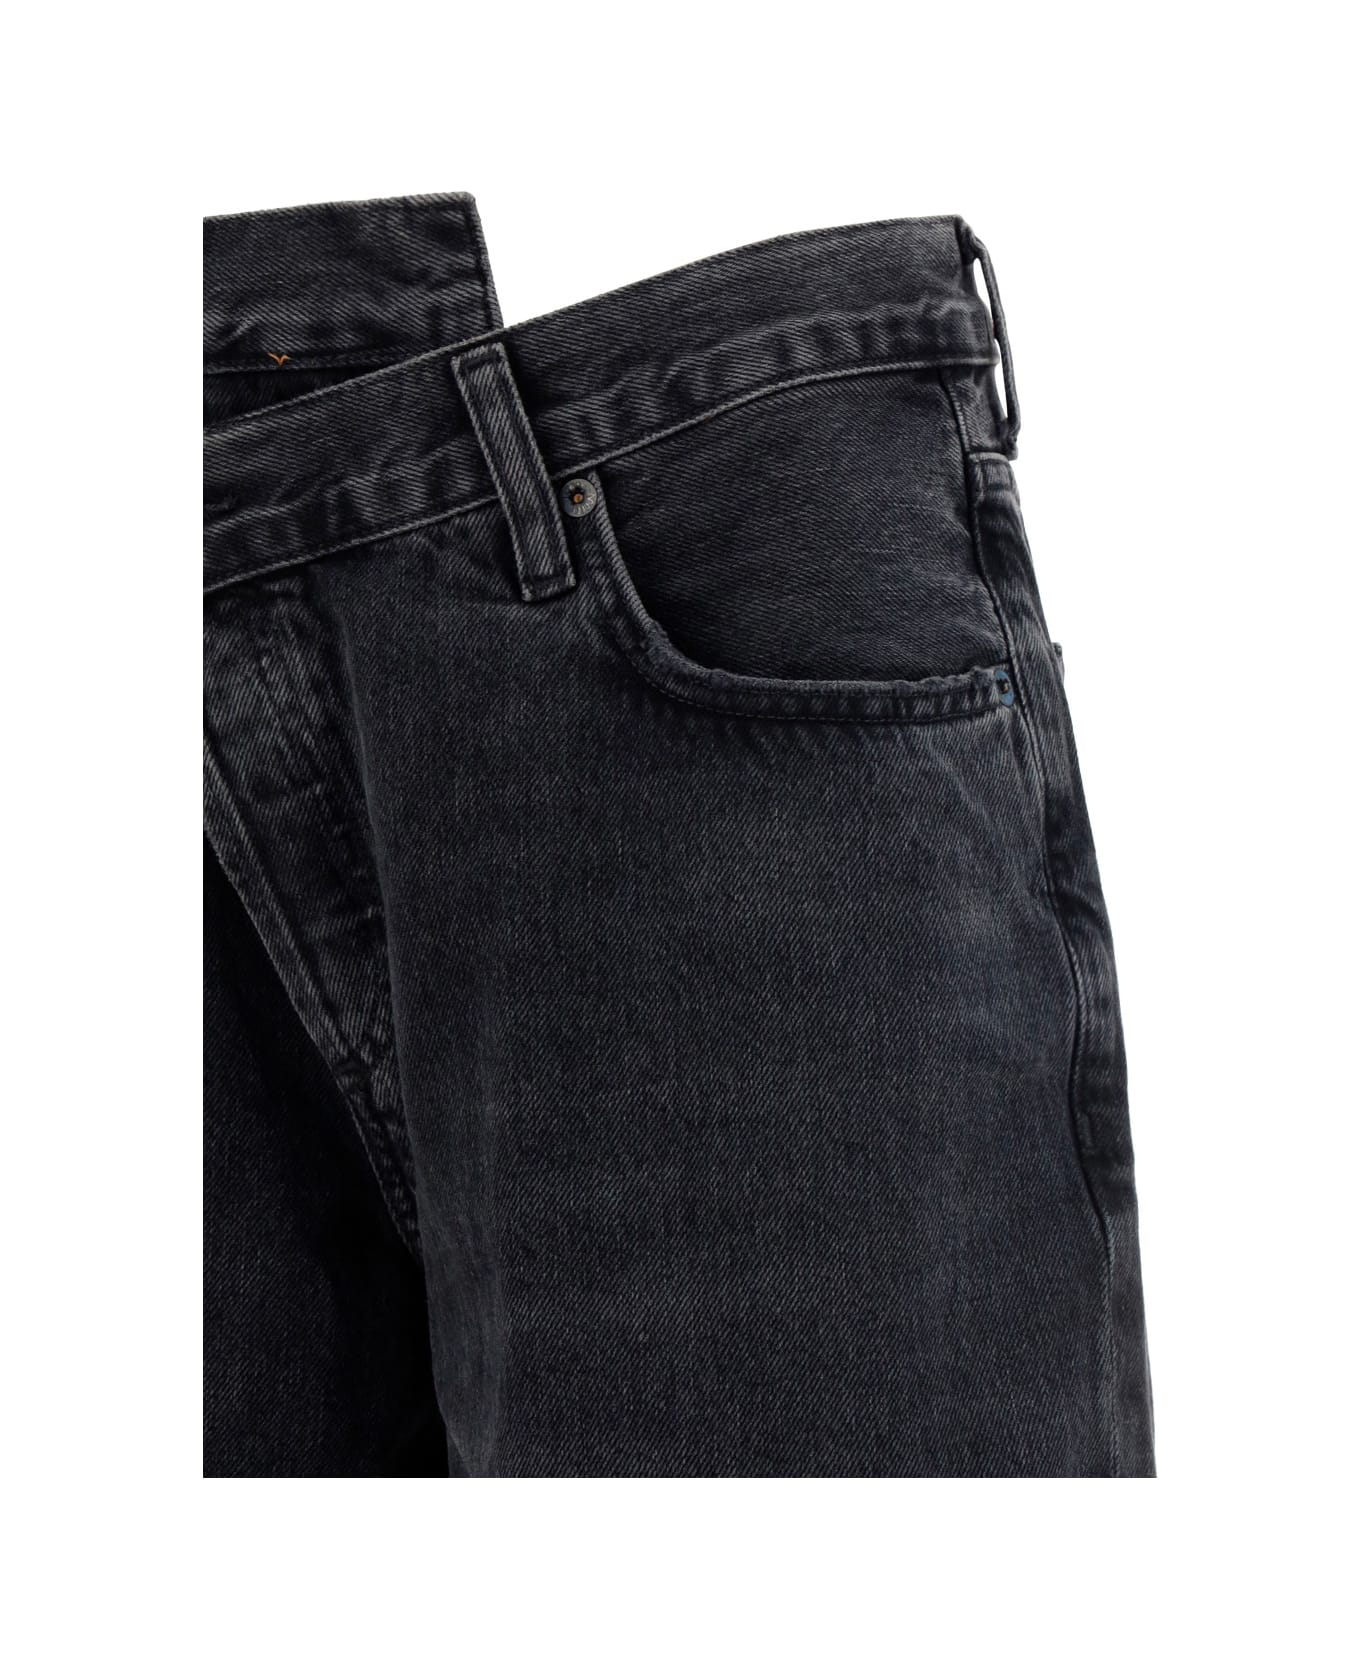 AGOLDE Jeans - BLACK